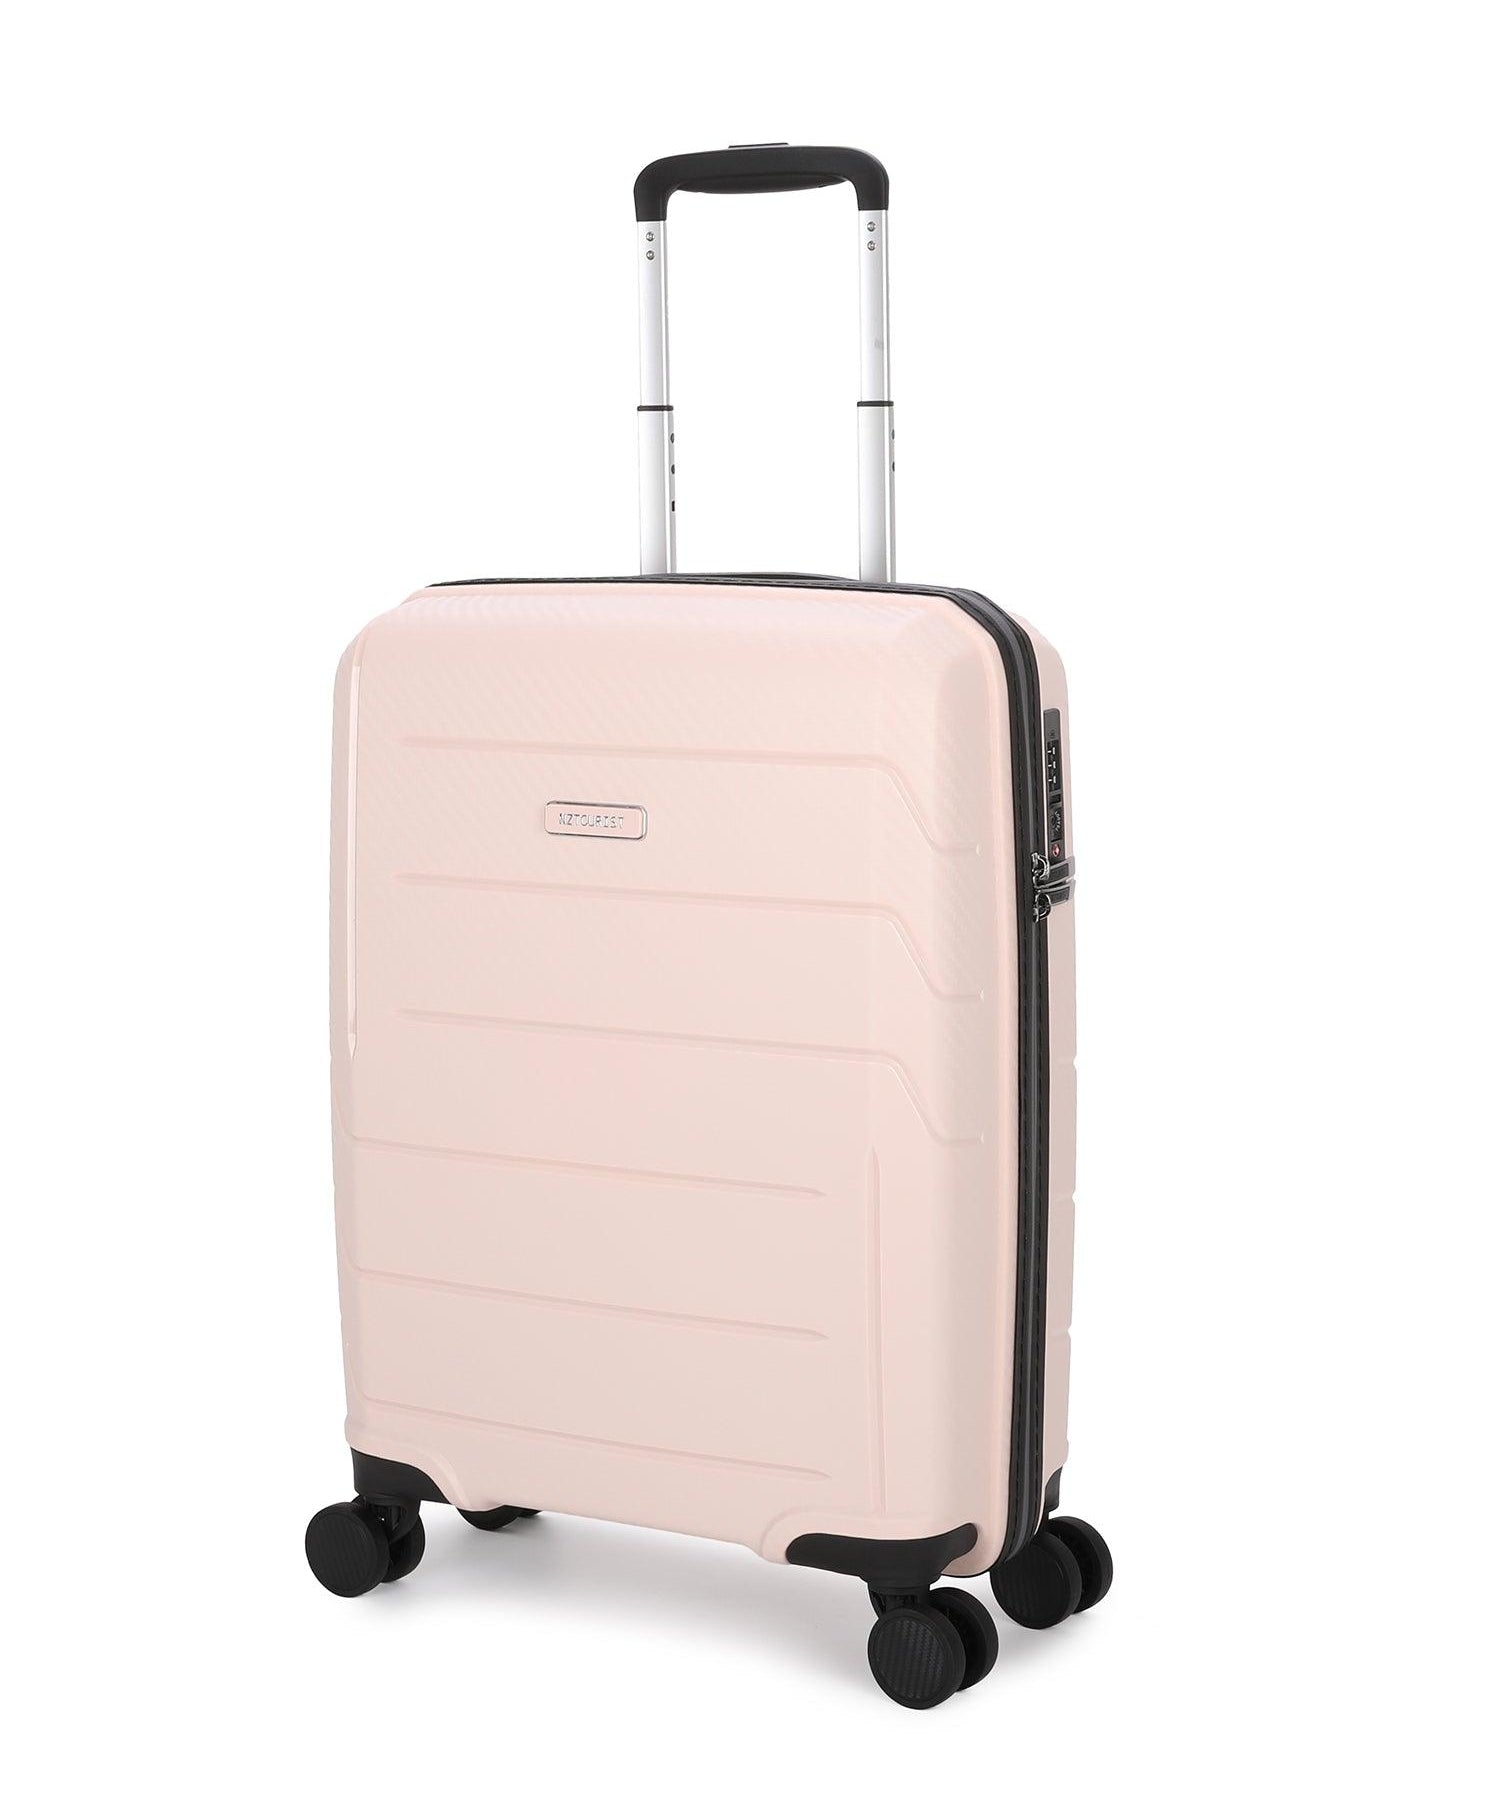 NZTourist Ultra-Light Traveller 56cm Suitcase - Blue - San Michelle Bags suitcase nz